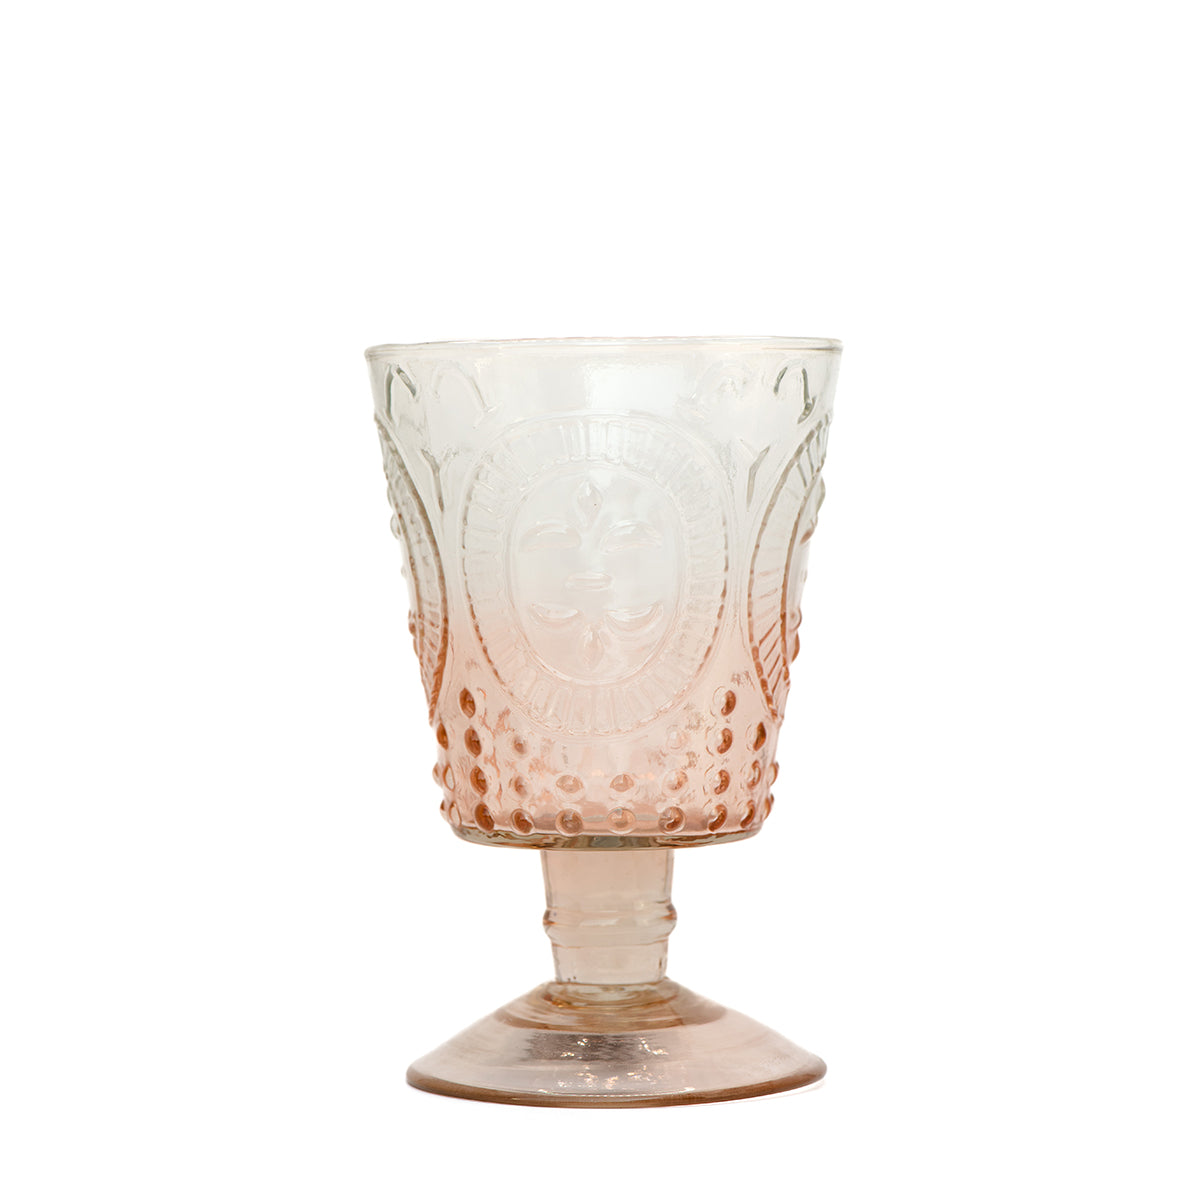 Fleur De Lil Wine Glasses | Pink Ombre | Set of 4 Glasses